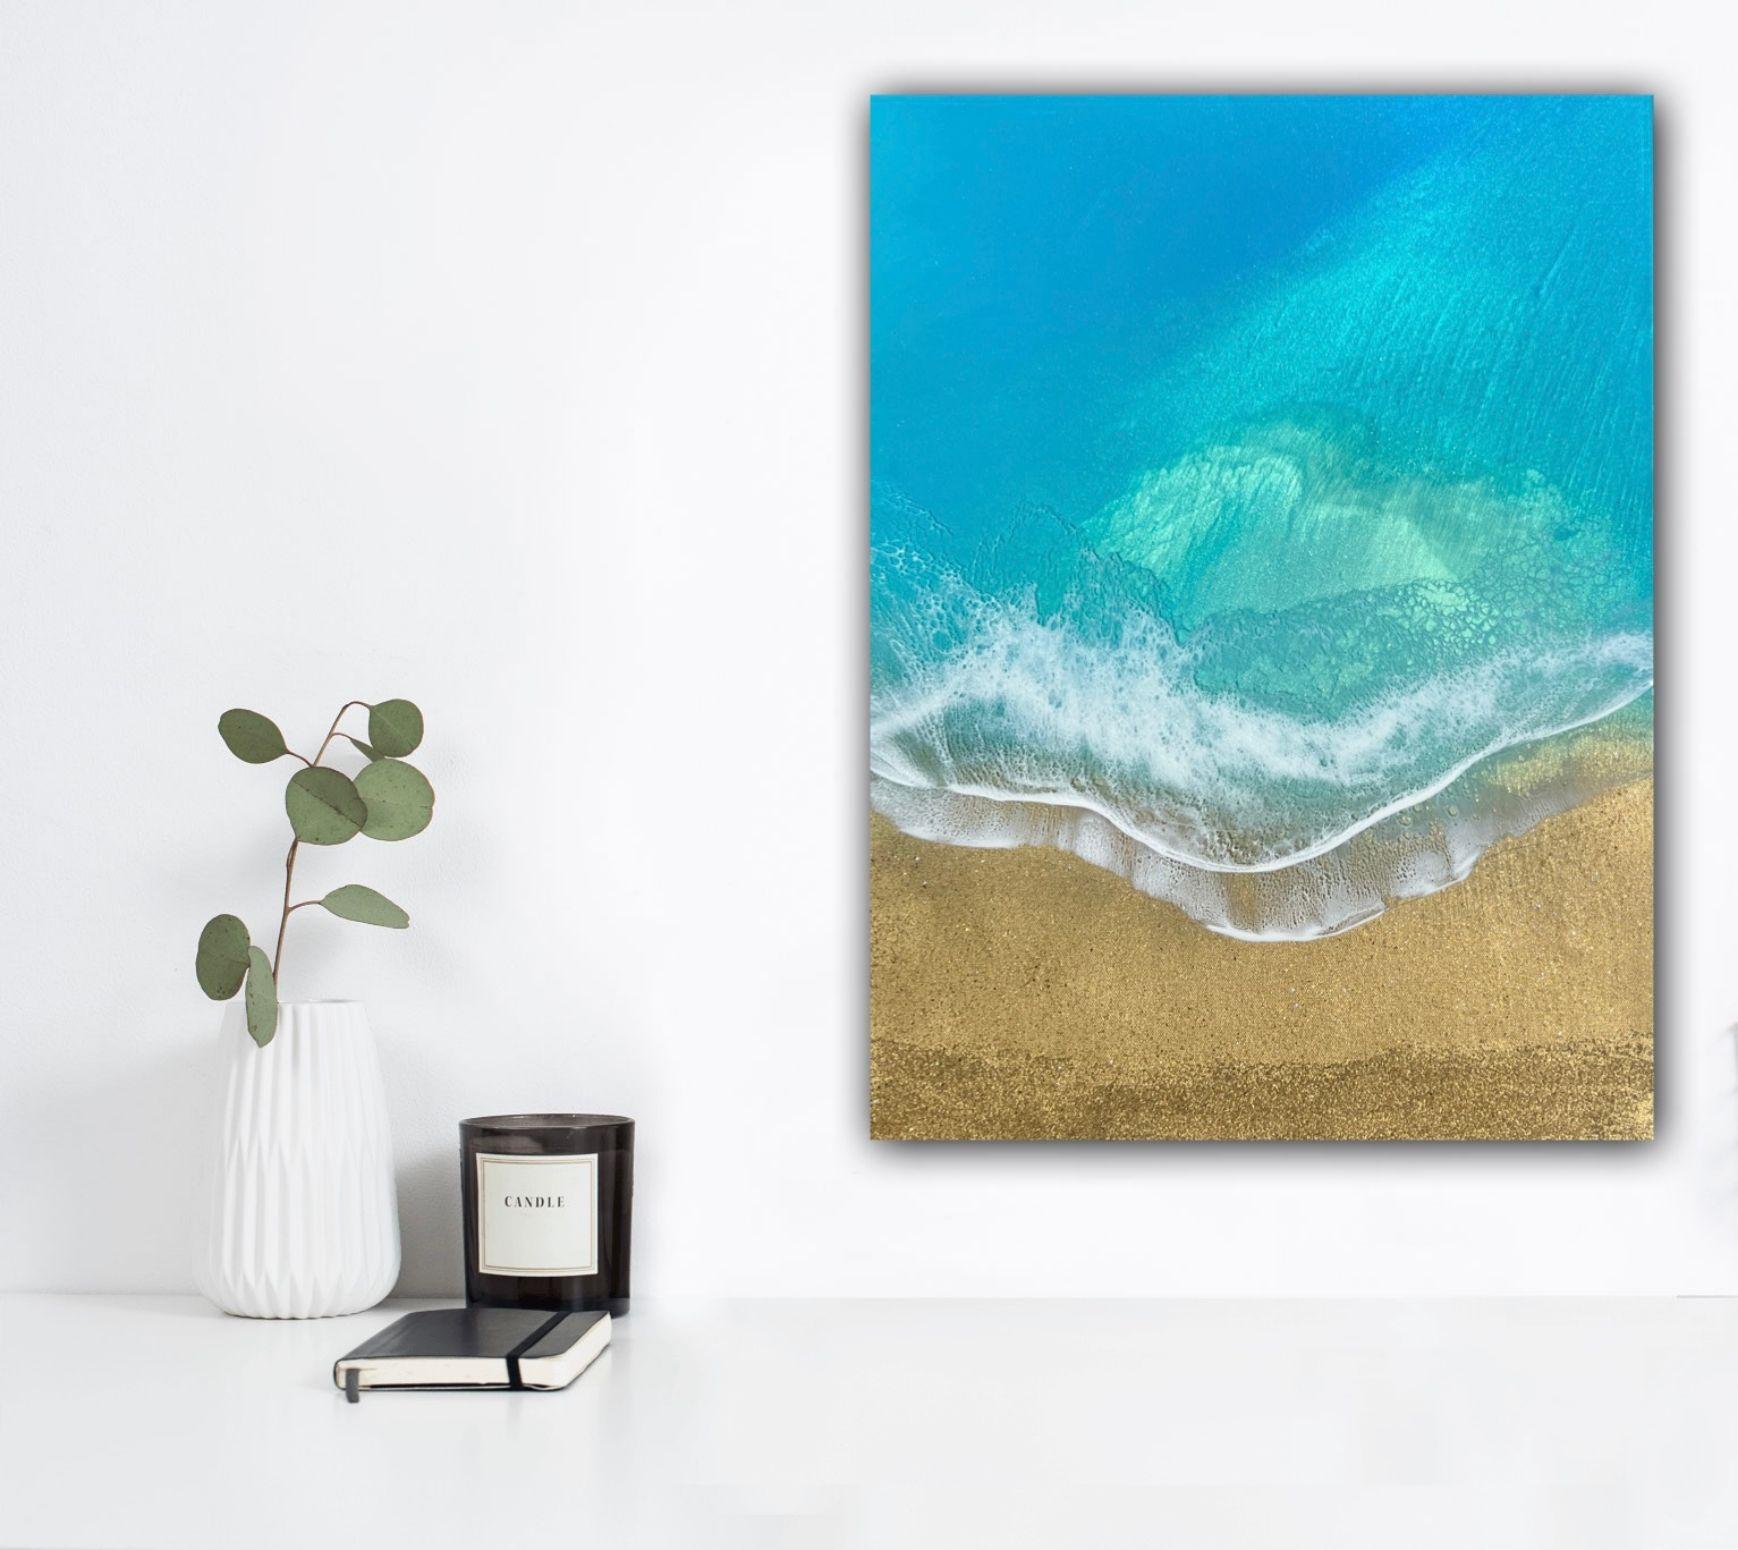 Peintures uniques de l'océan et de la plage avec du sable doré et des vagues écumantes, inspirées par les îles Turks et Caicos.  Peinture d'un paysage marin avec une plage de sable doré et des vagues écumantes.  Différentes nuances de bleu, de